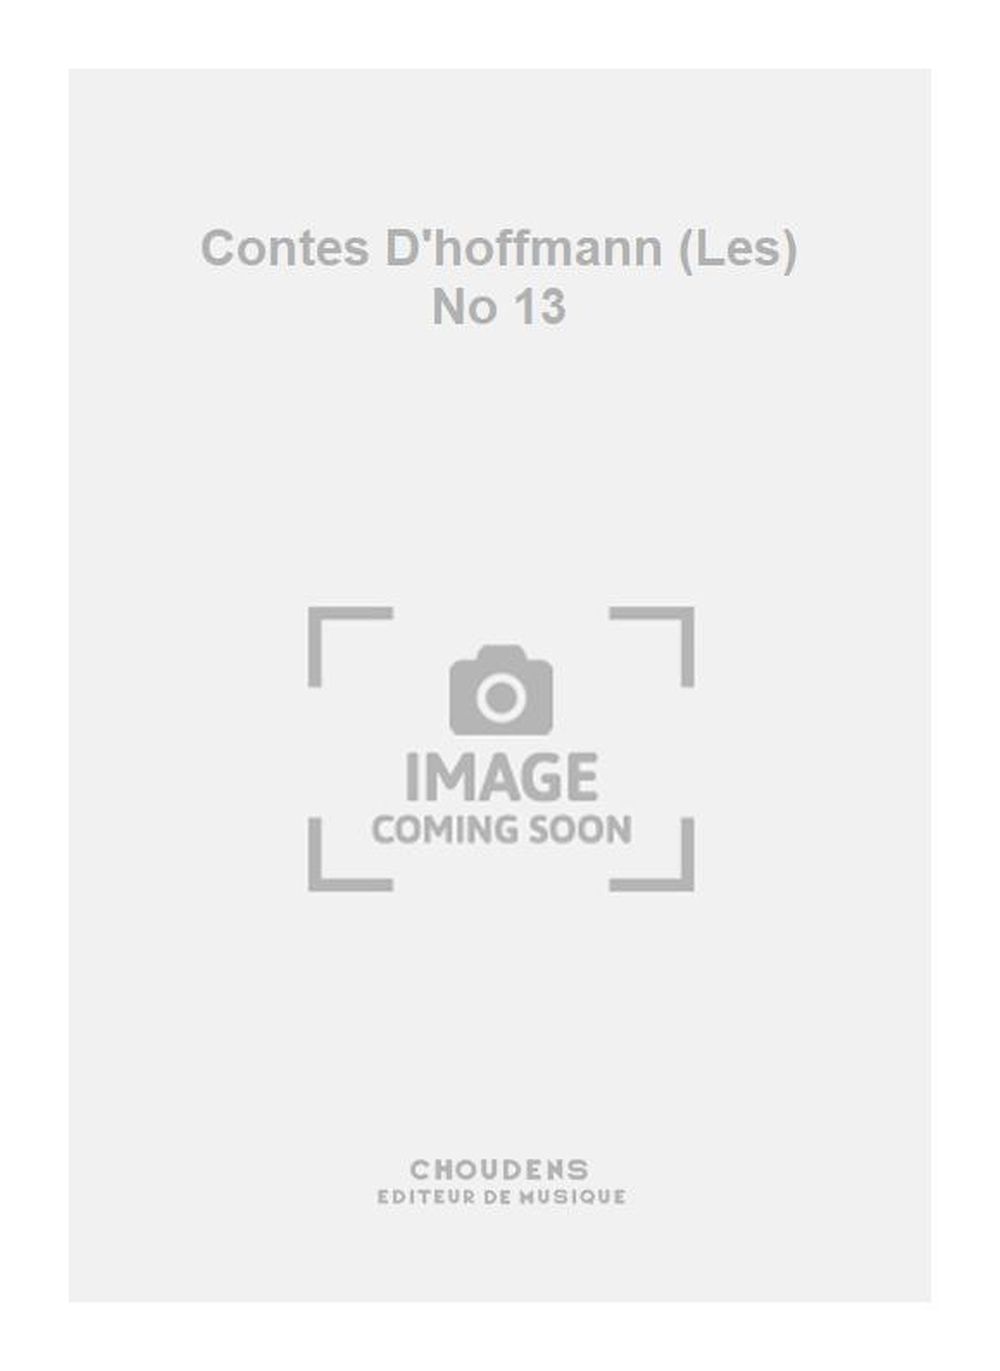 Jacques Offenbach: Contes D'hoffmann (Les) No 13